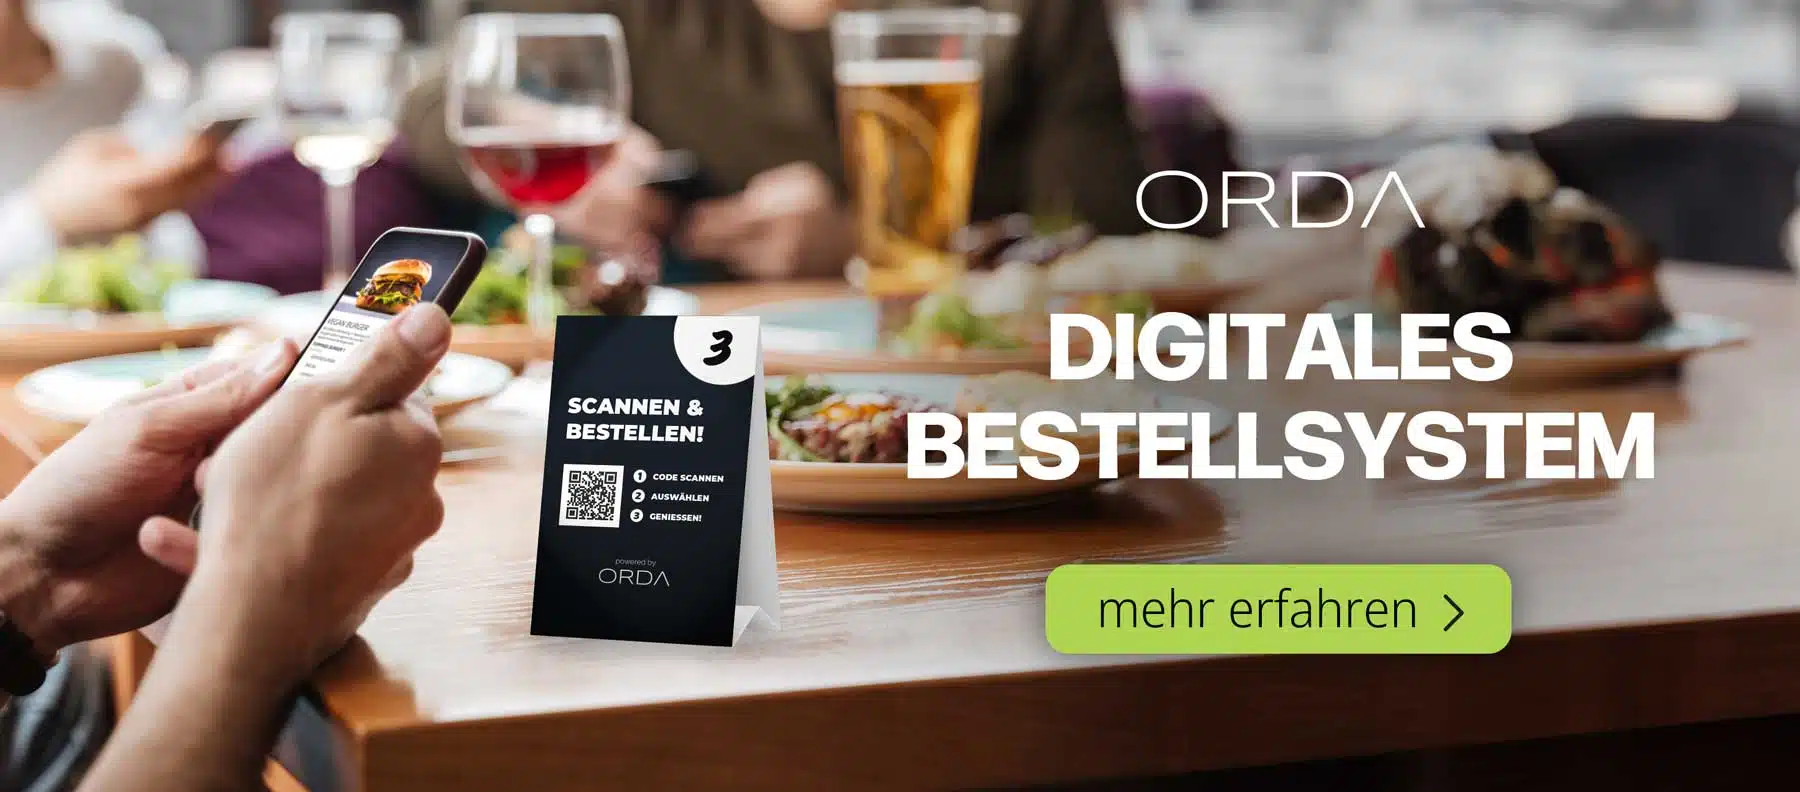 Gastronomie Konzepte: Selbstbedienungsrestaurant mit digitalem Bestellsystem ORDA